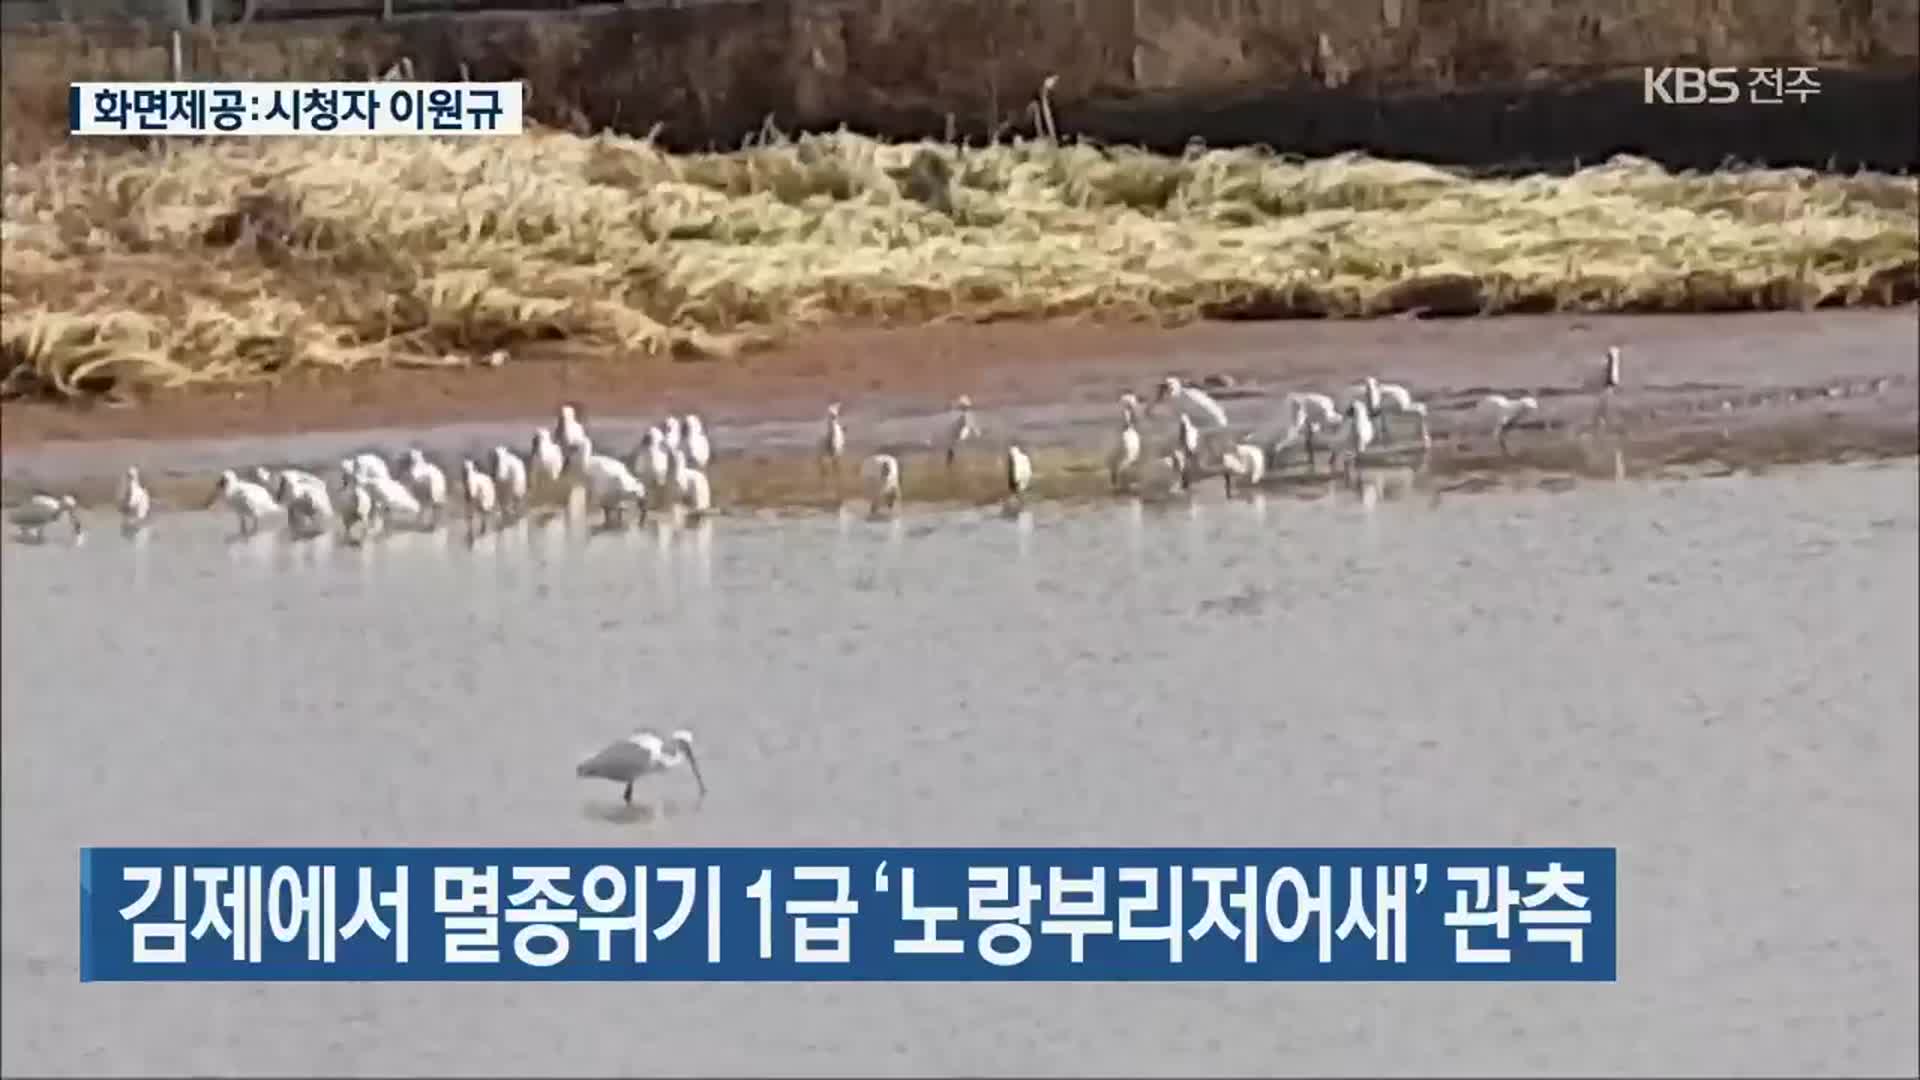 김제에서 멸종위기 1급 ‘노랑부리저어새’ 관측